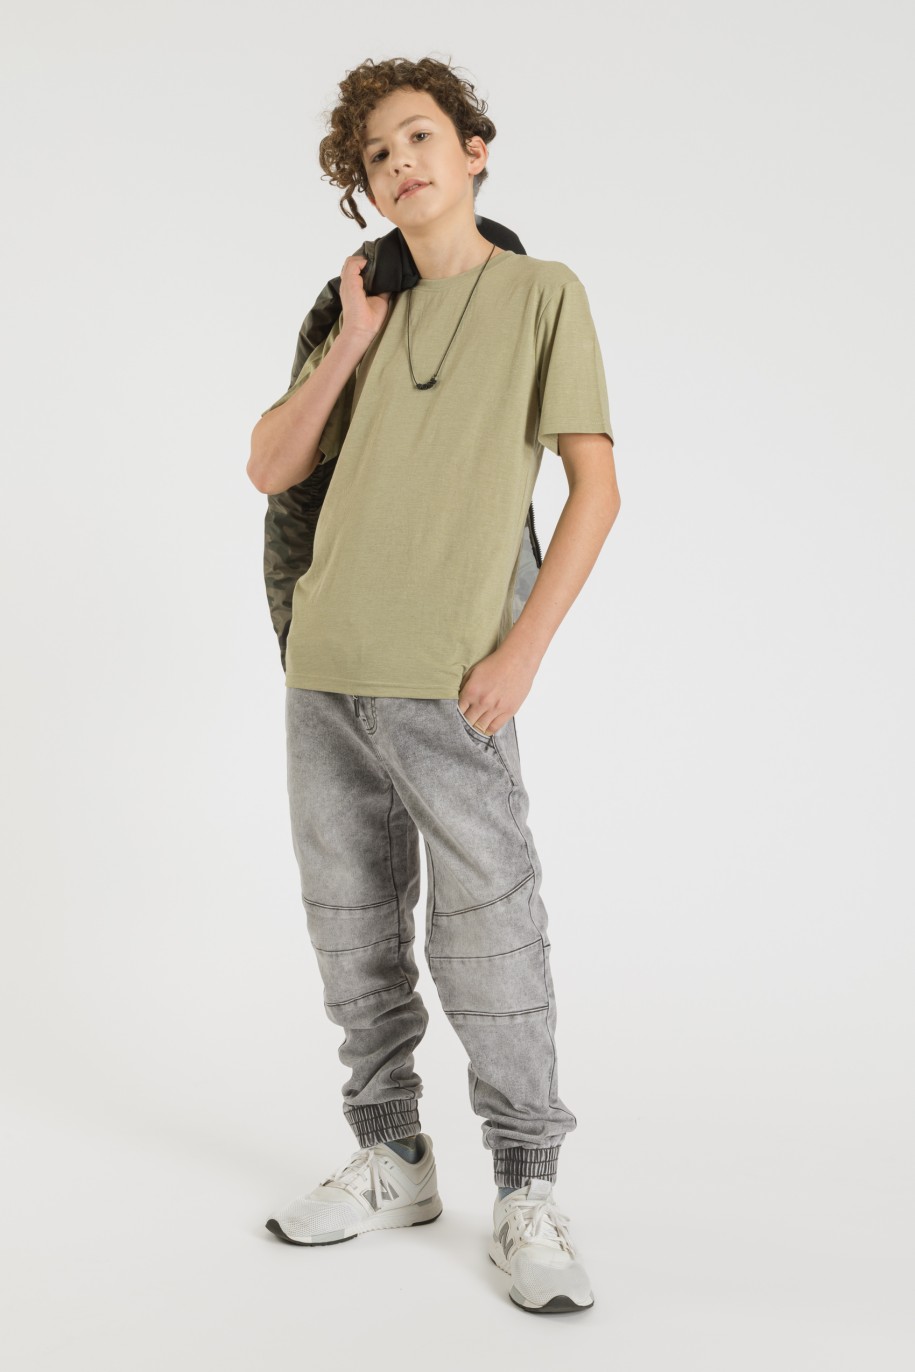 Szare jeansy typu jogger ze ściągaczami dla chłopaka - 33583